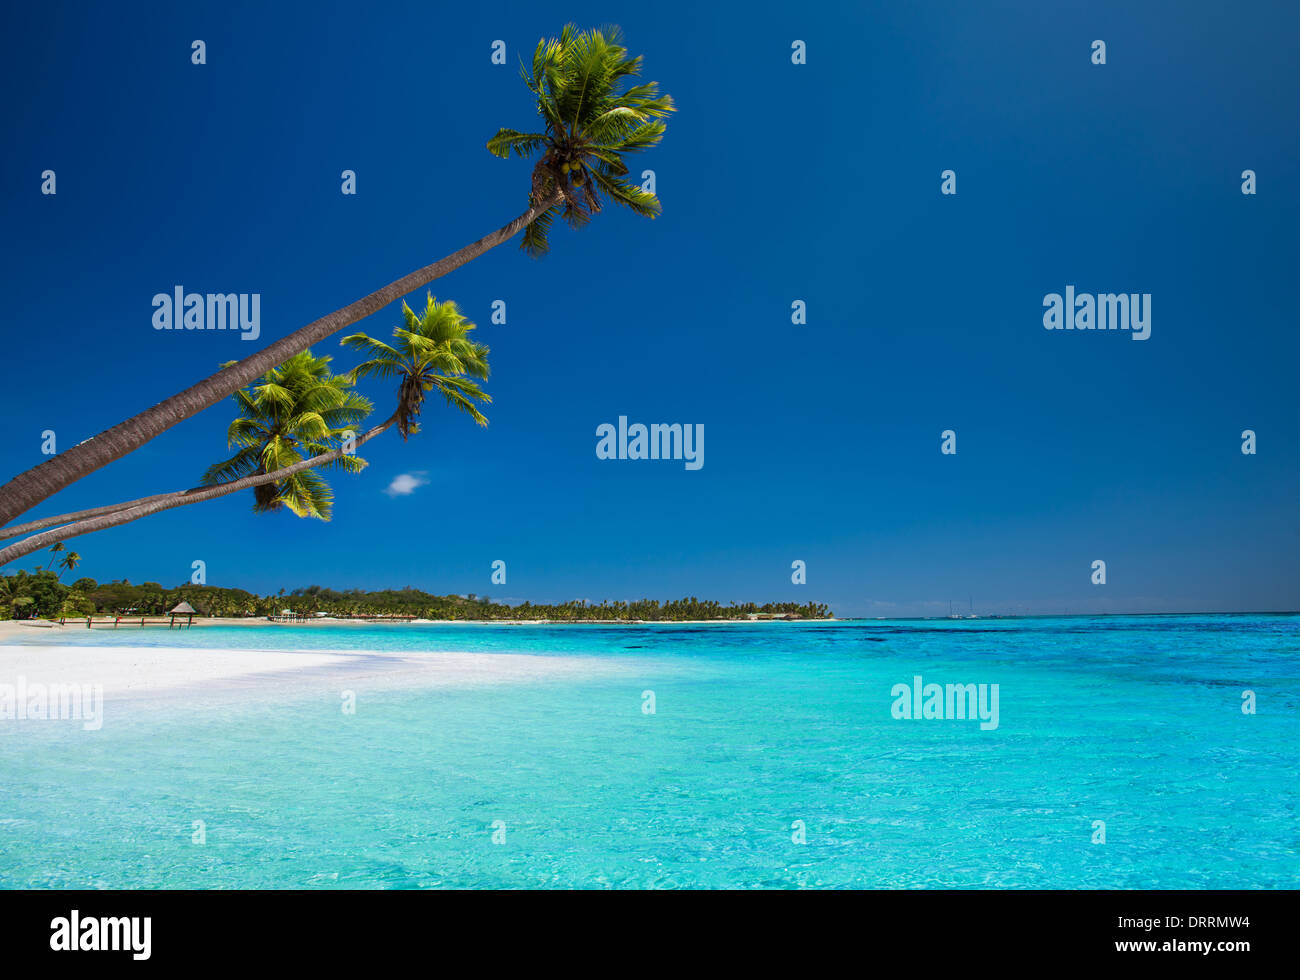 Alcune palme da cocco sulla spiaggia deserta di isola tropicale Foto Stock